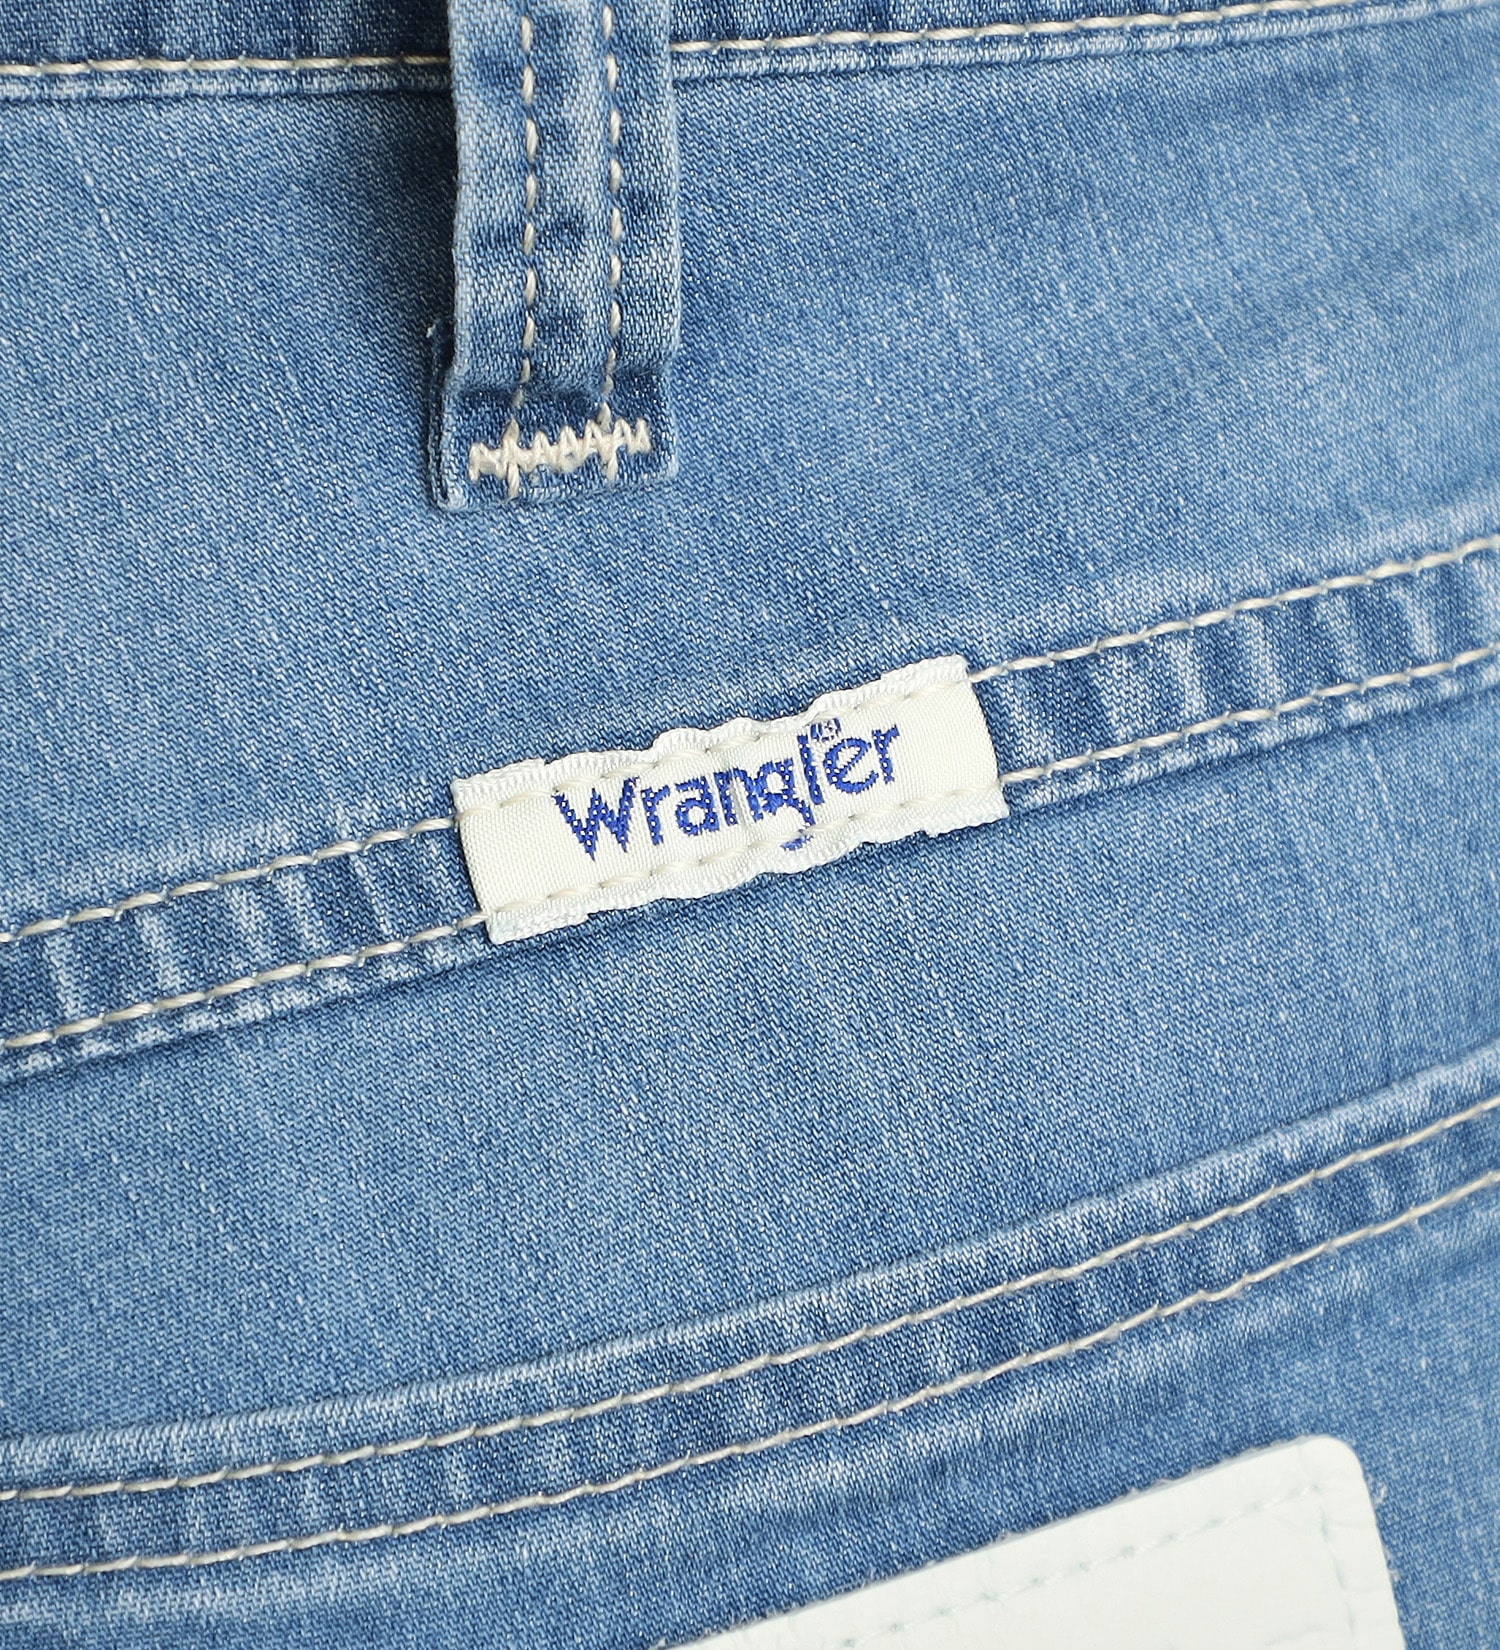 Wrangler(ラングラー)の【試着対象】【涼・COOL】ドライタッチショーツ|パンツ/デニムパンツ/メンズ|淡色ブルー